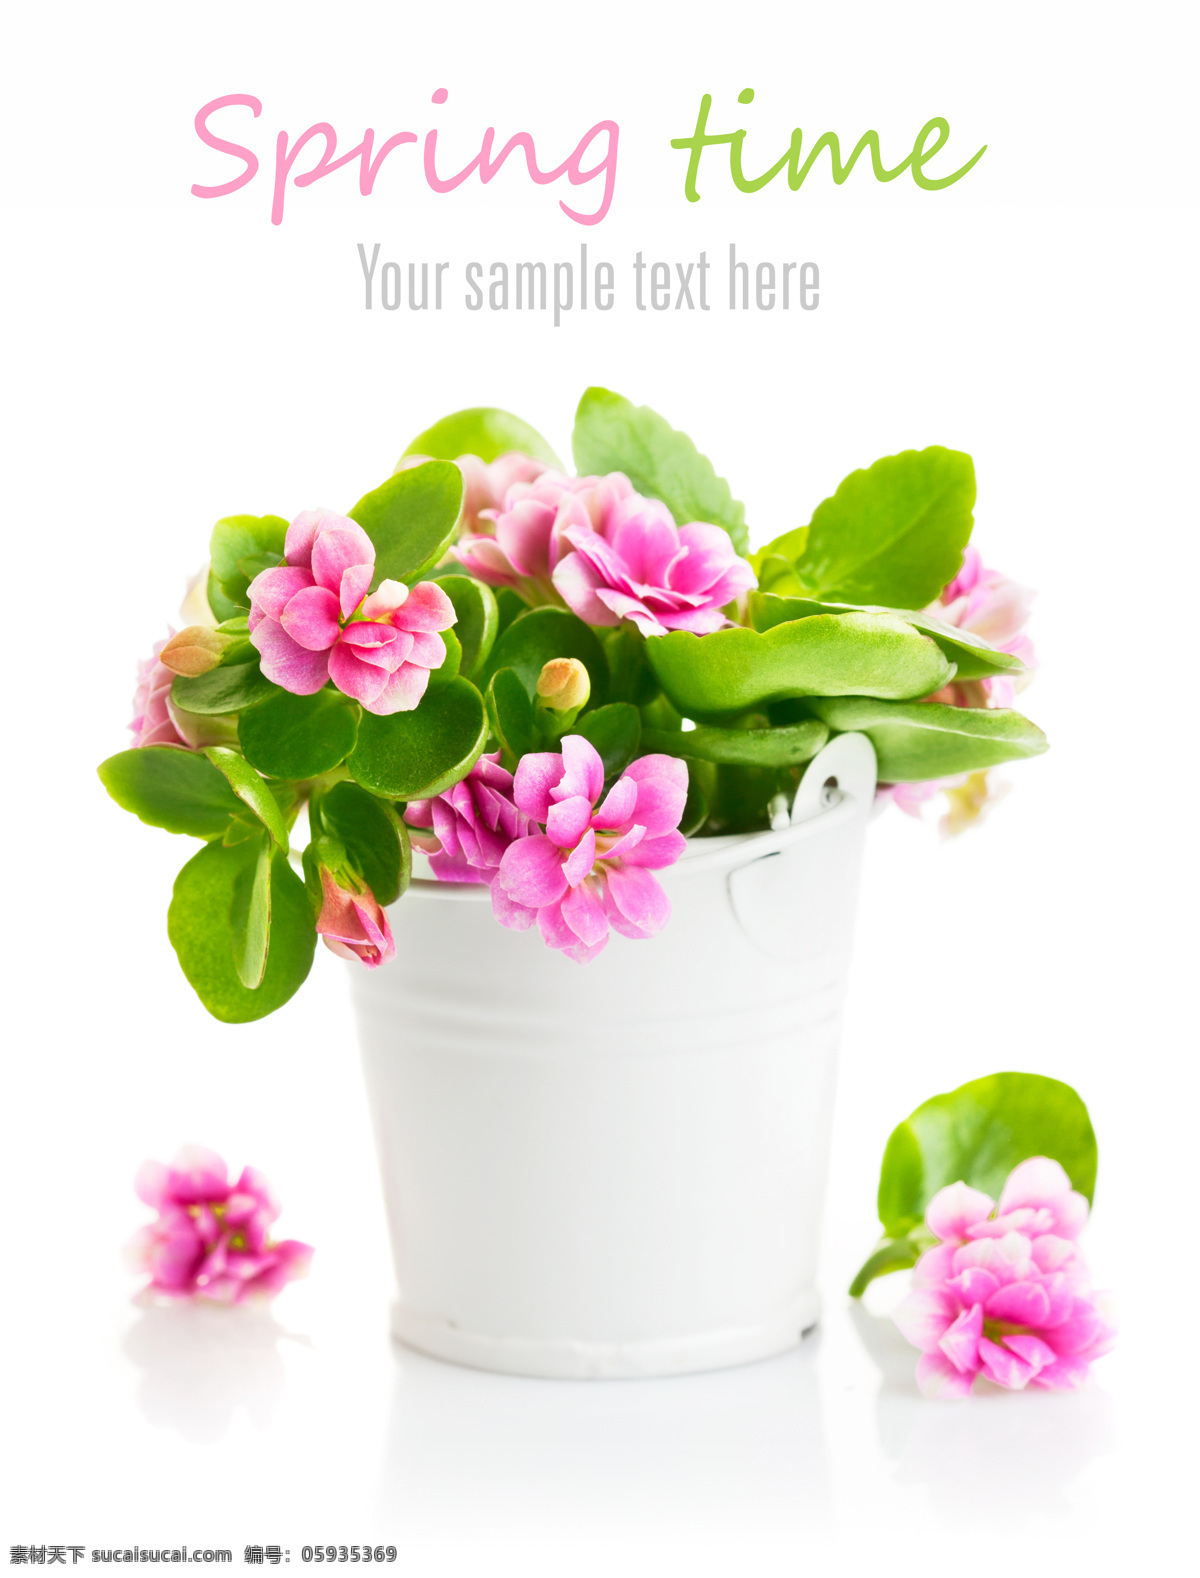 绿叶 粉色 花朵 铁桶 花瓶 粉色花朵 鲜花 植物 花卉 花草树木 生物世界